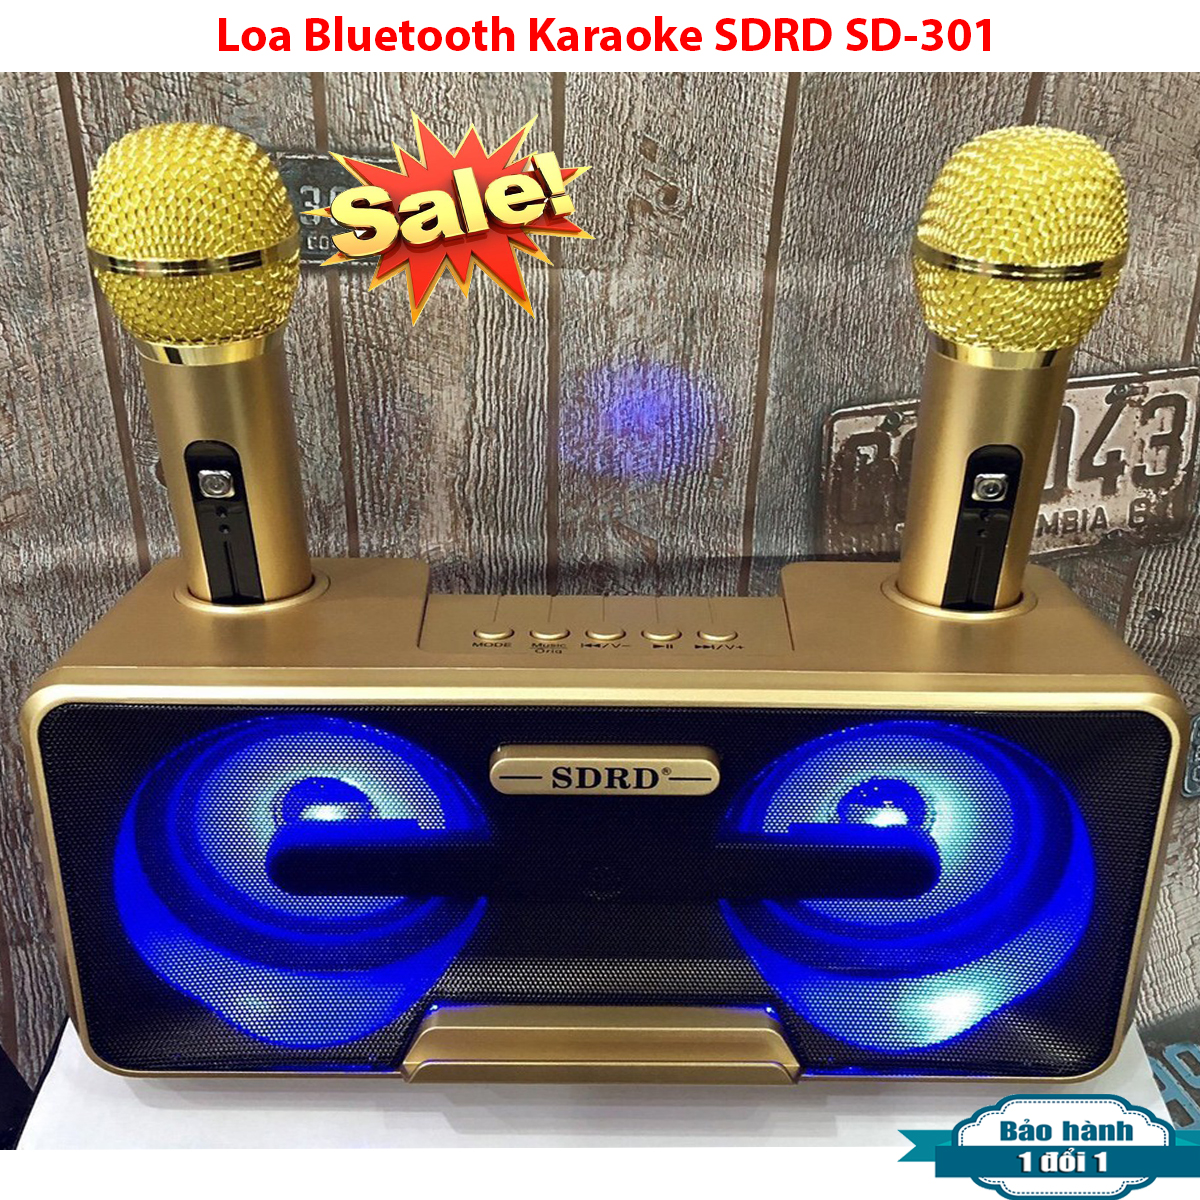 Loa nhật công suất lớn, Loa Thùng Bluetooth Hát Karaoke hay, Loa Bluetooth Karaoke SDRD SD-301+ Kèm 2 Mic Không Dây.Loa karaoke bluetooth có giá đỡ điện thoại, Phân Phối Và Bảo Hành 1 Đổi 1